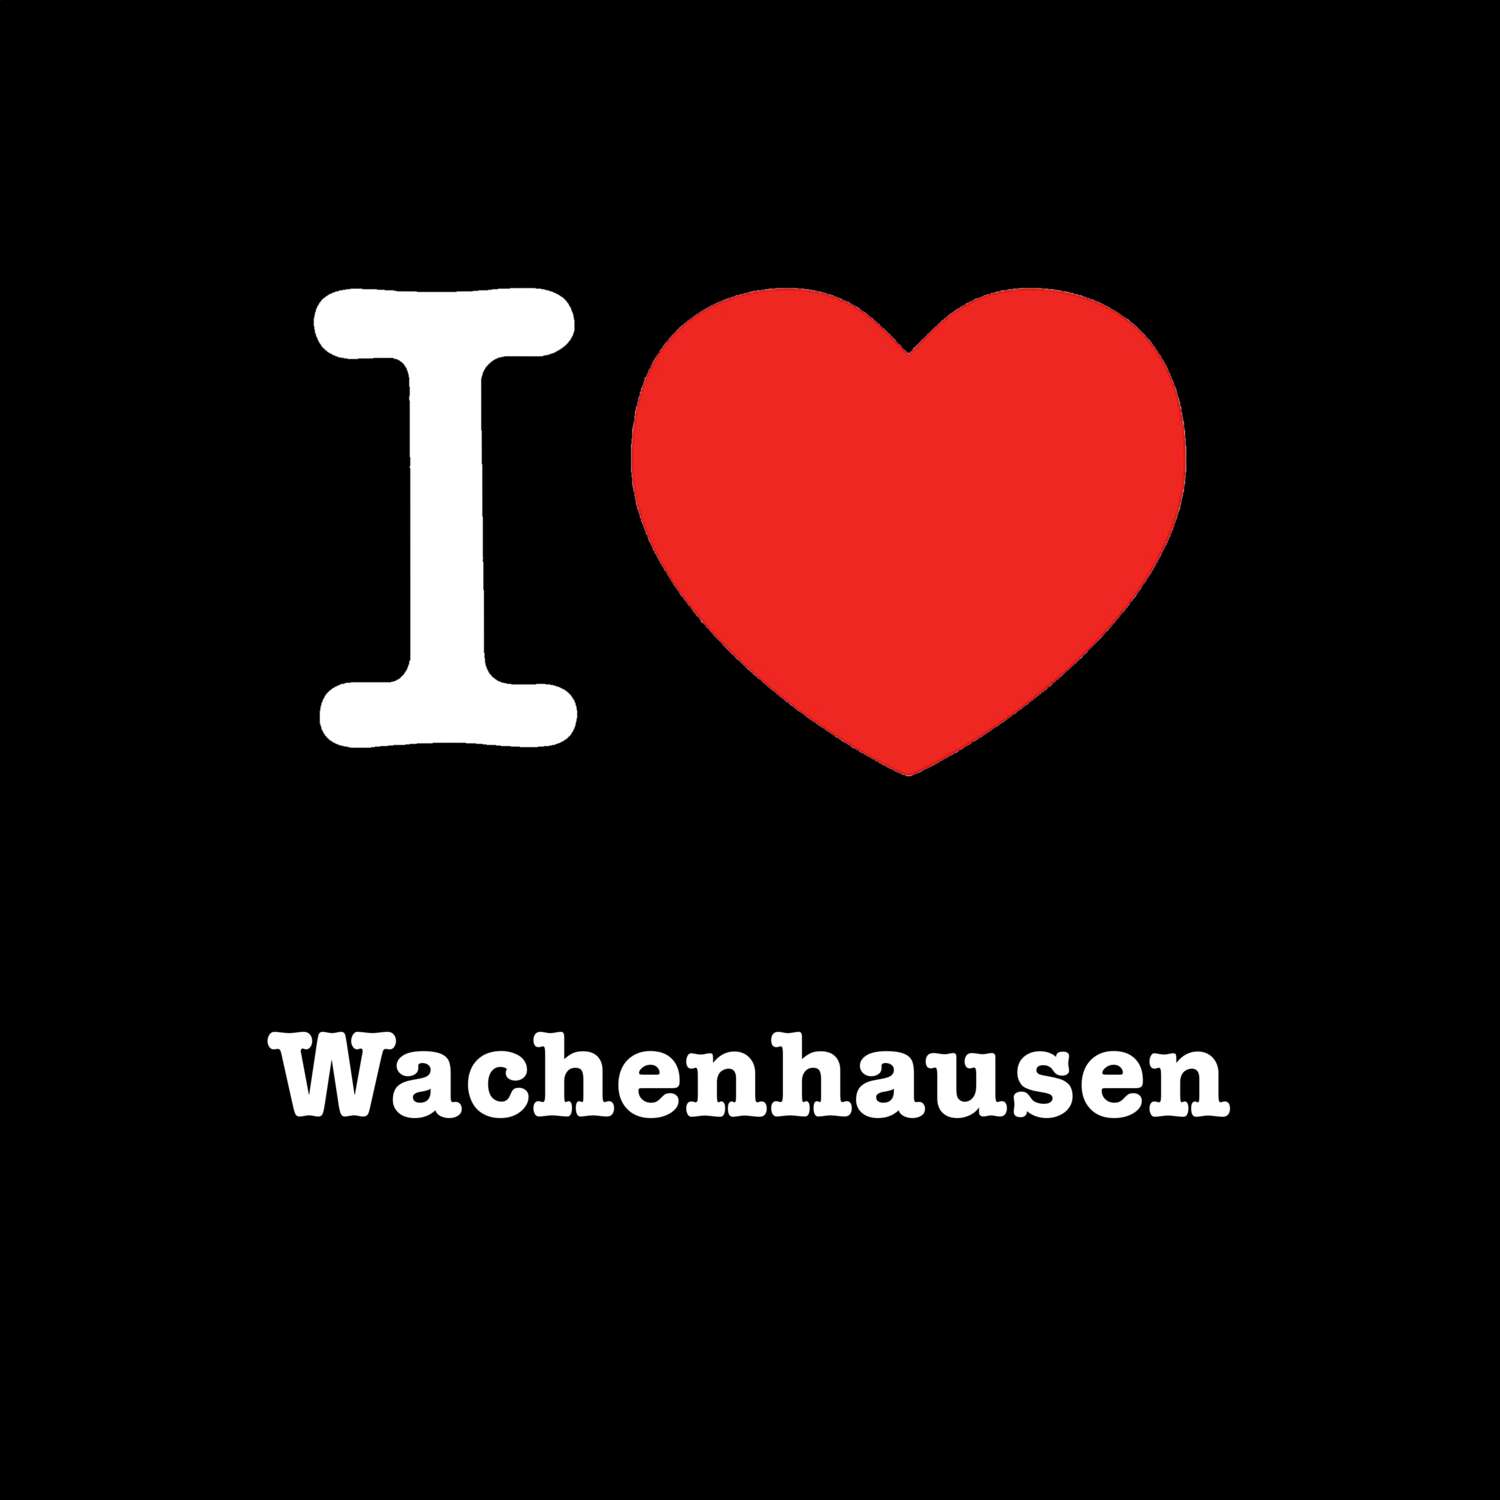 Wachenhausen T-Shirt »I love«